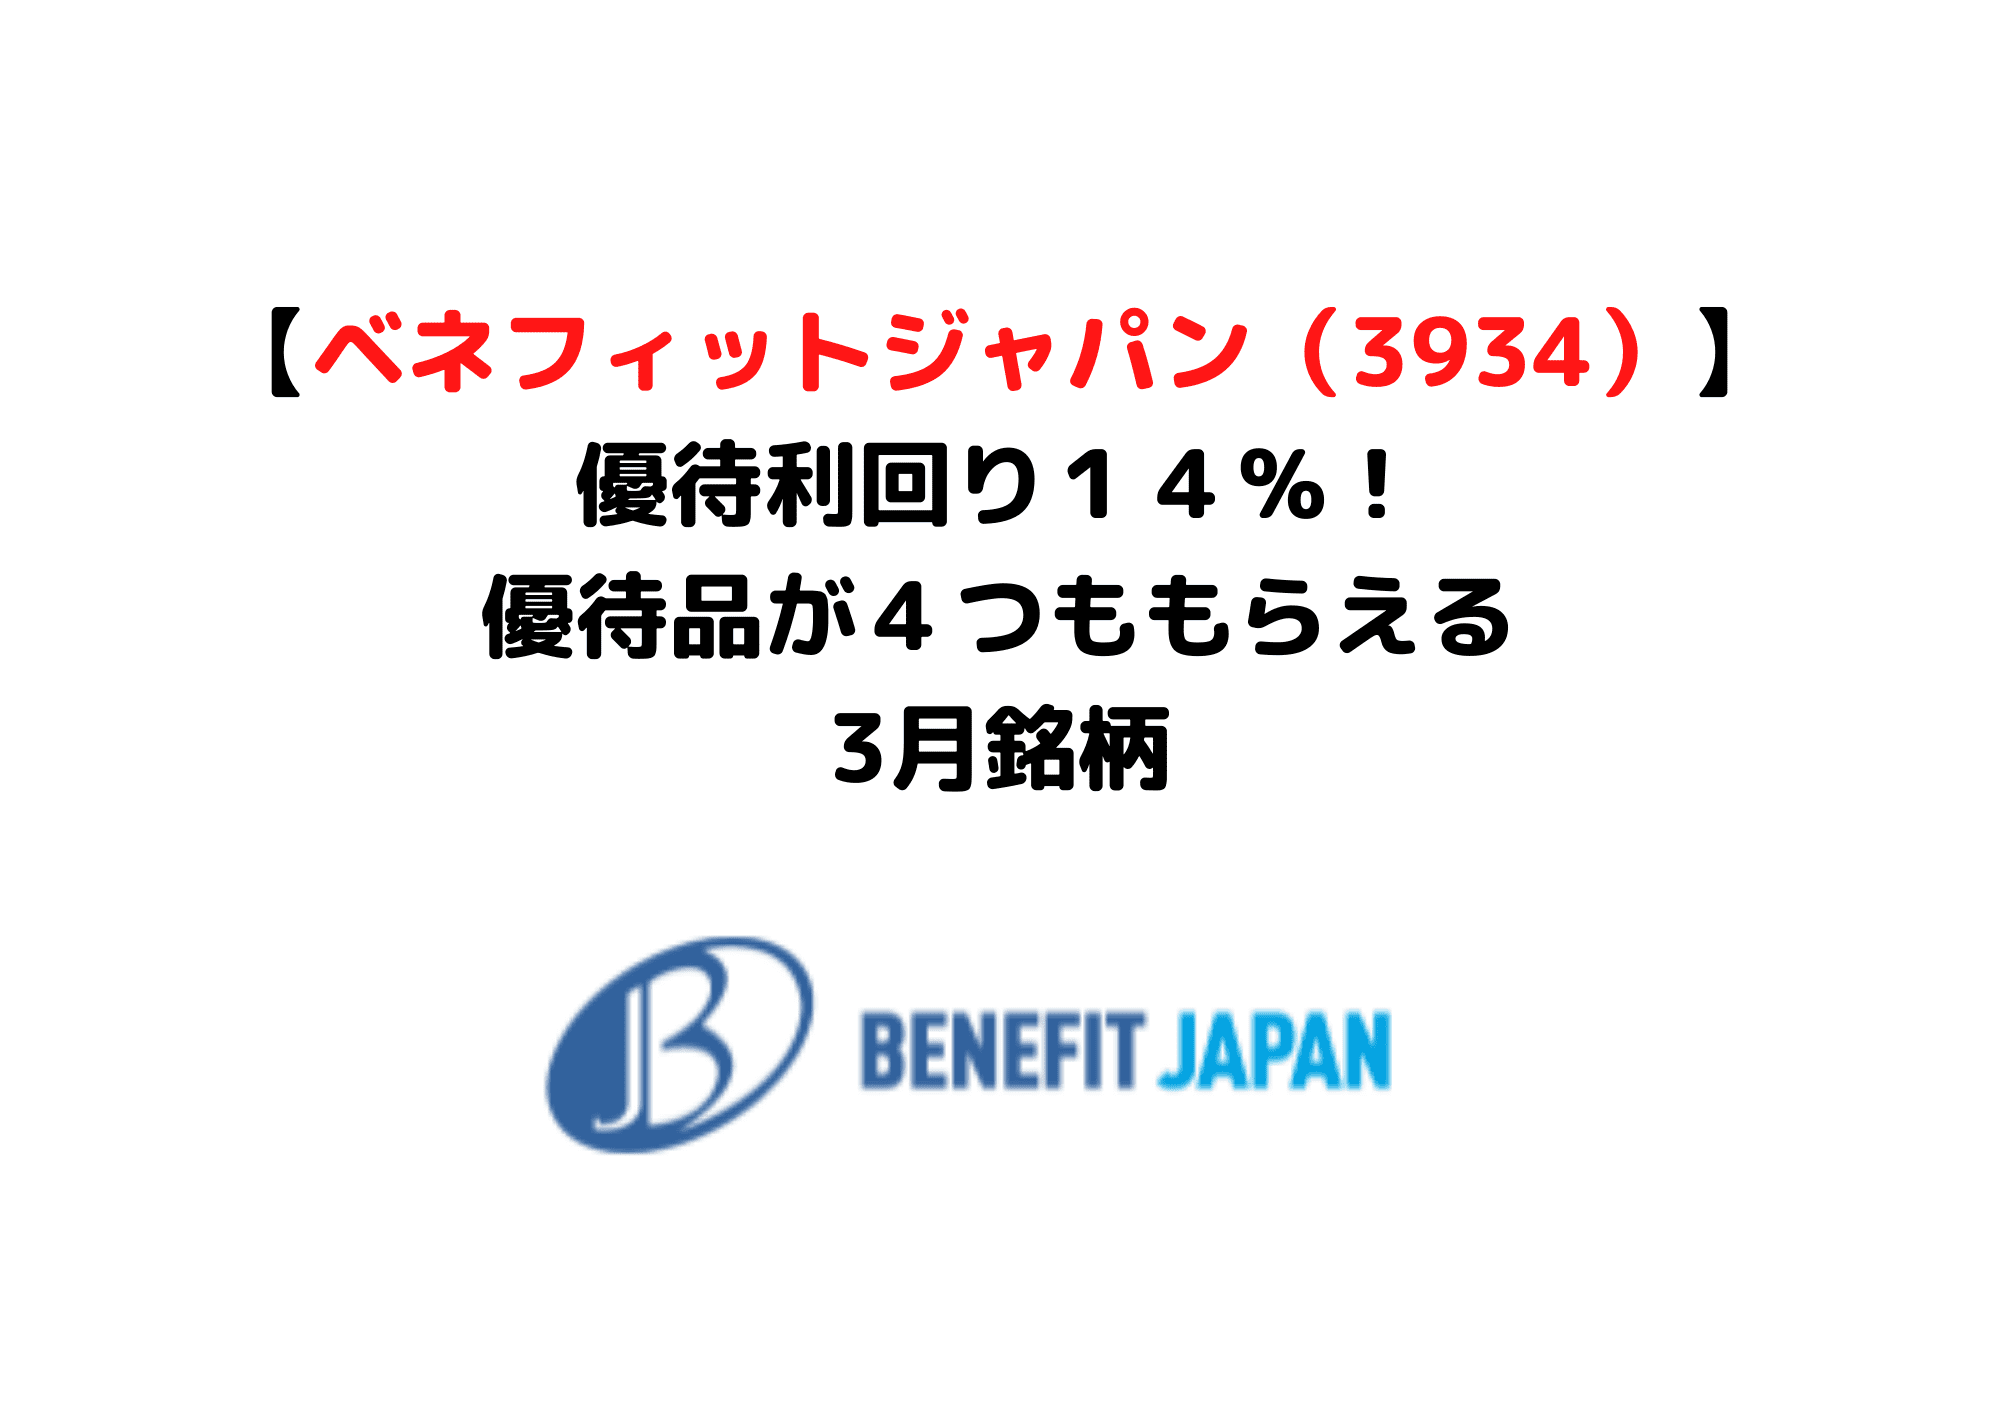 ベネフィットジャパン3934 (1)